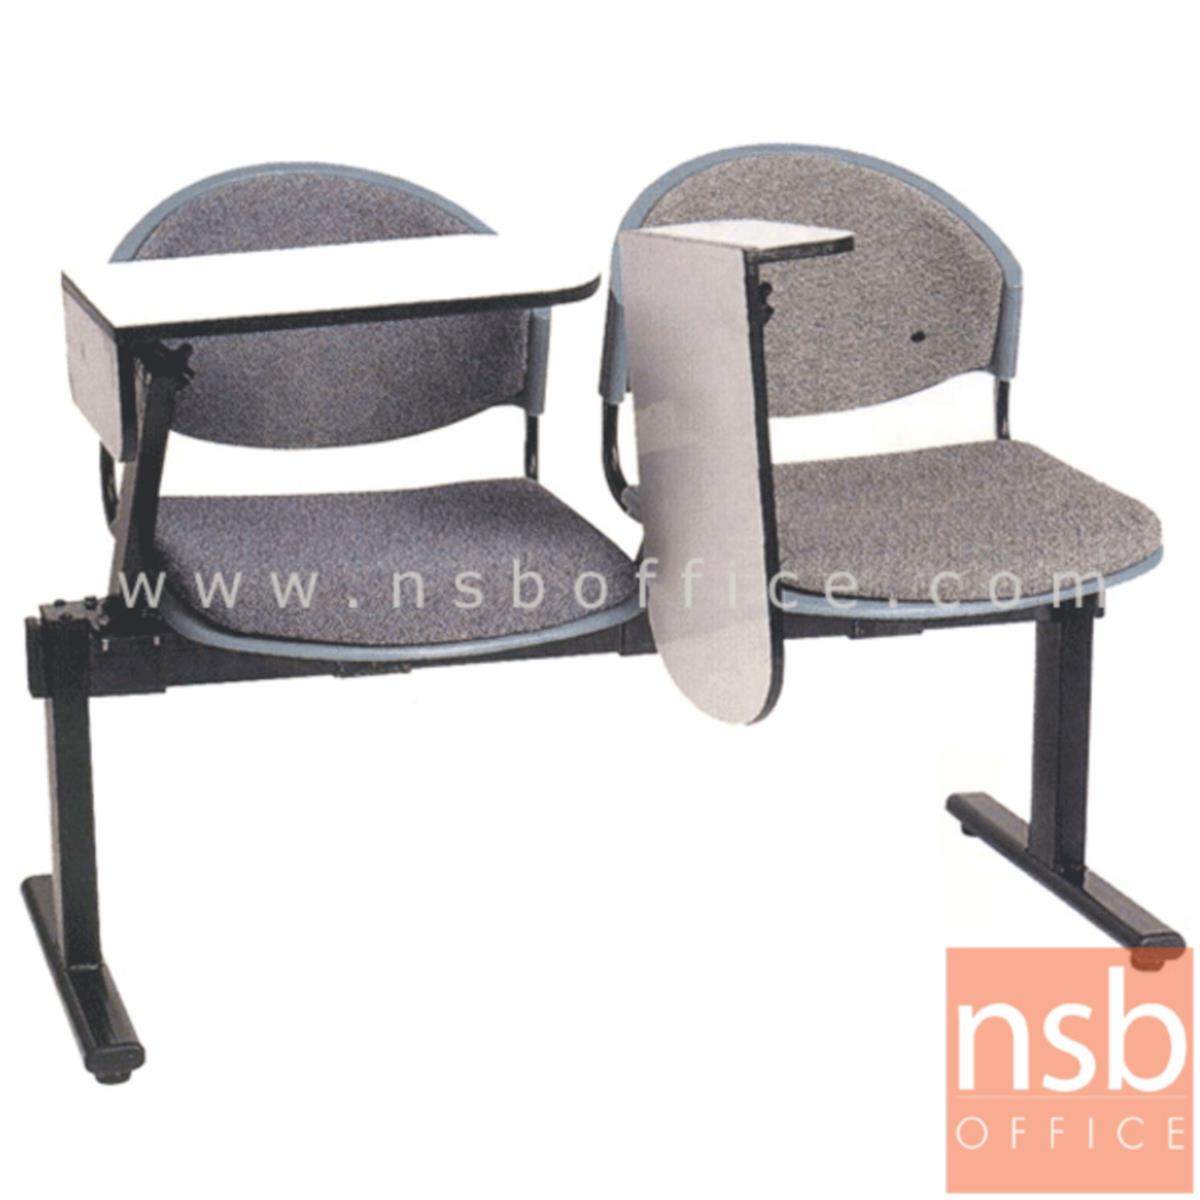 เก้าอี้เลคเชอร์แถวเฟรมโพลี่หุ้มเบาะ รุ่น D190 2 ,3 และ 4 ที่นั่ง ขาเหล็กเหลี่ยมพ่นสี 